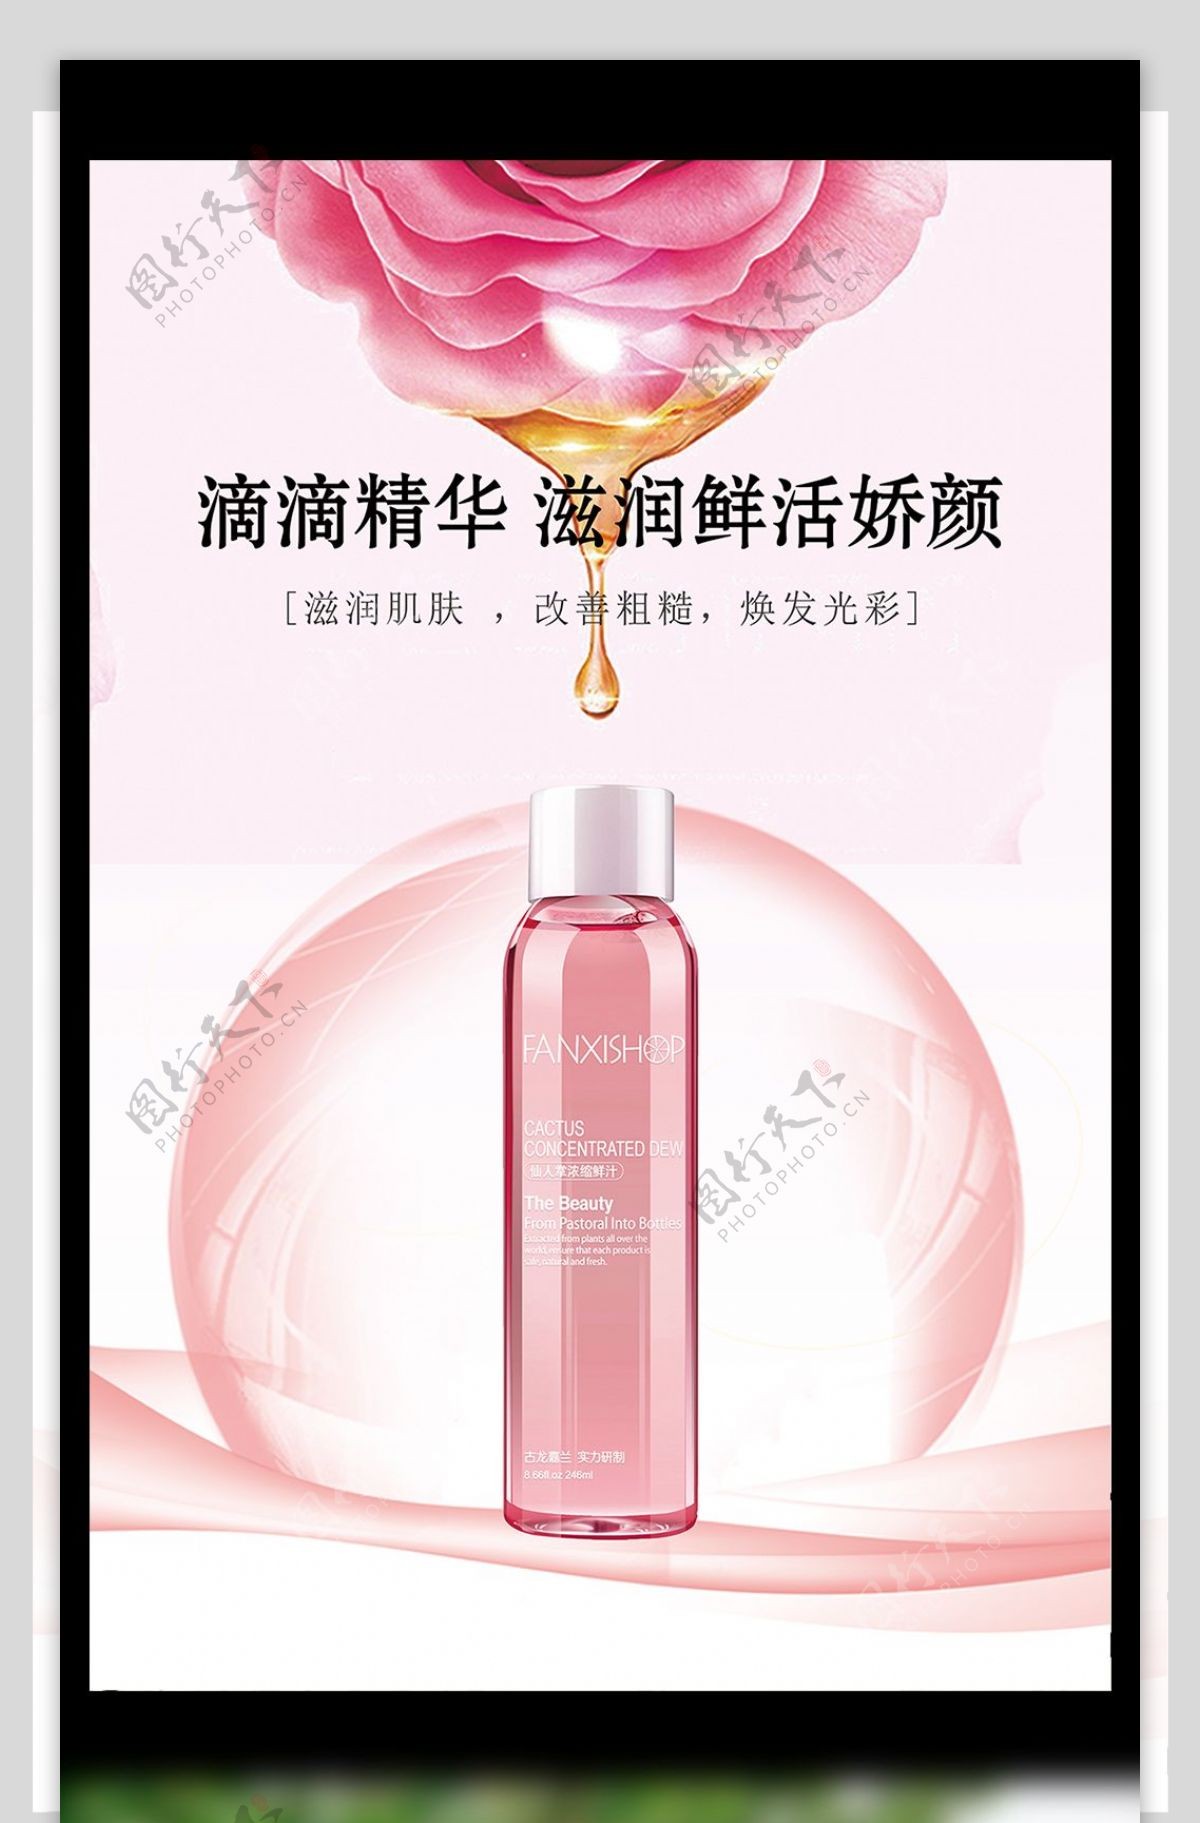 粉色高端大气化妆品海报图片模板